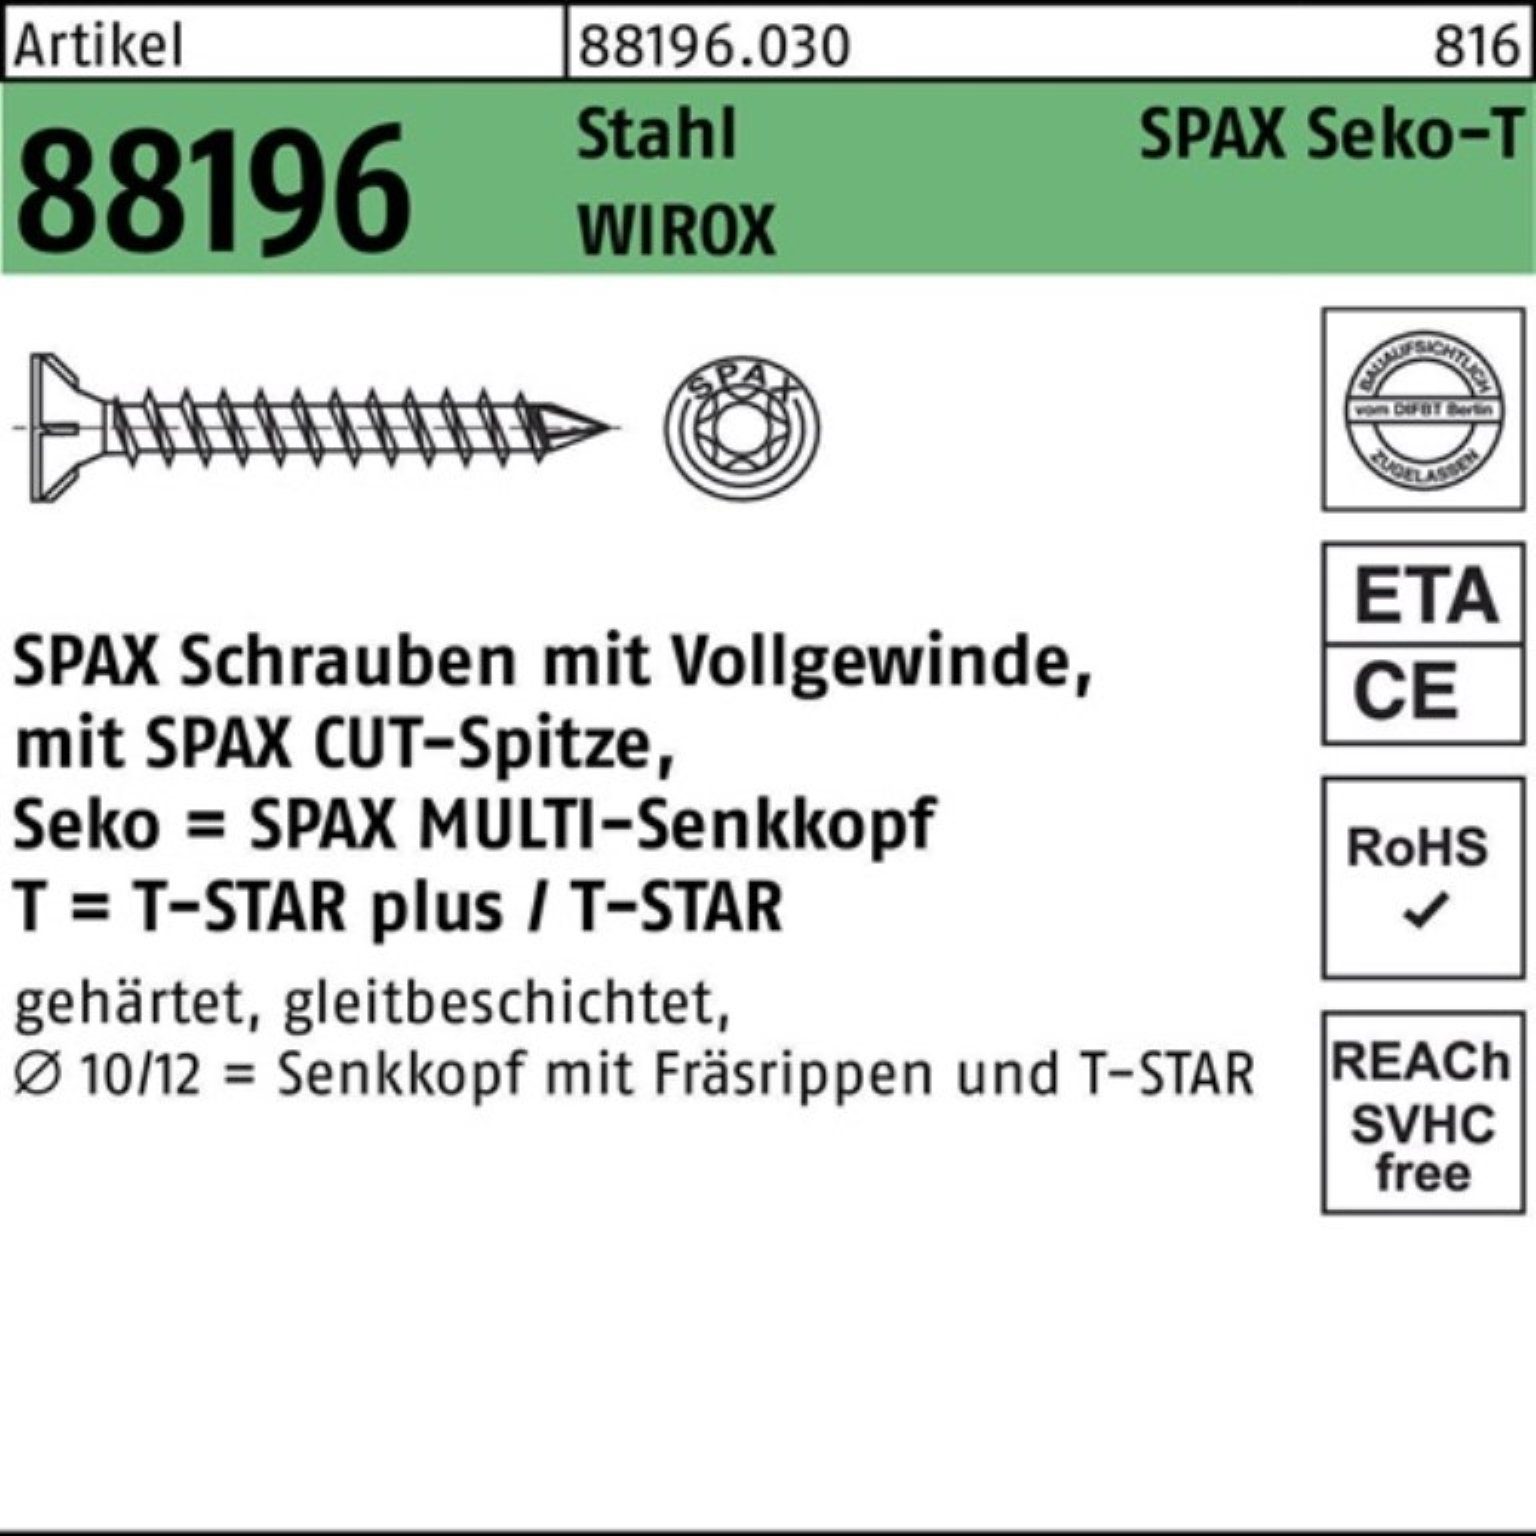 VG 88196 Sta R galv. 100er Schraube Seko Spitze/T-STAR Schraube Pack 10x500-T50 SPAX